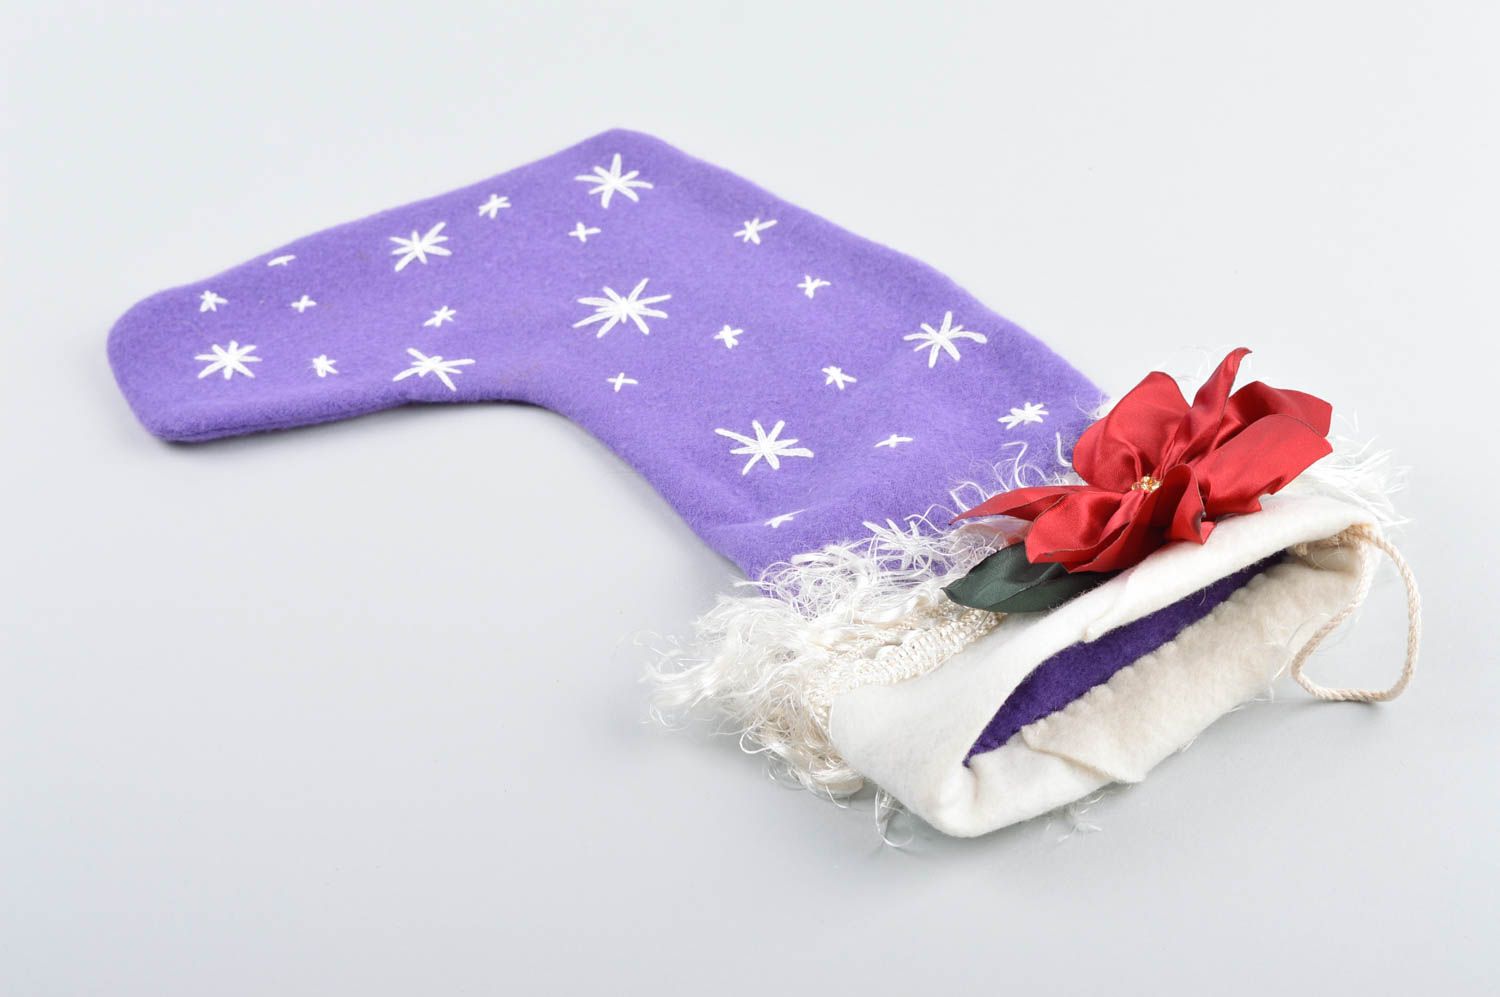 Handmade Christmas stockings Xmas stockings handmade decorations souvenir ideas photo 5